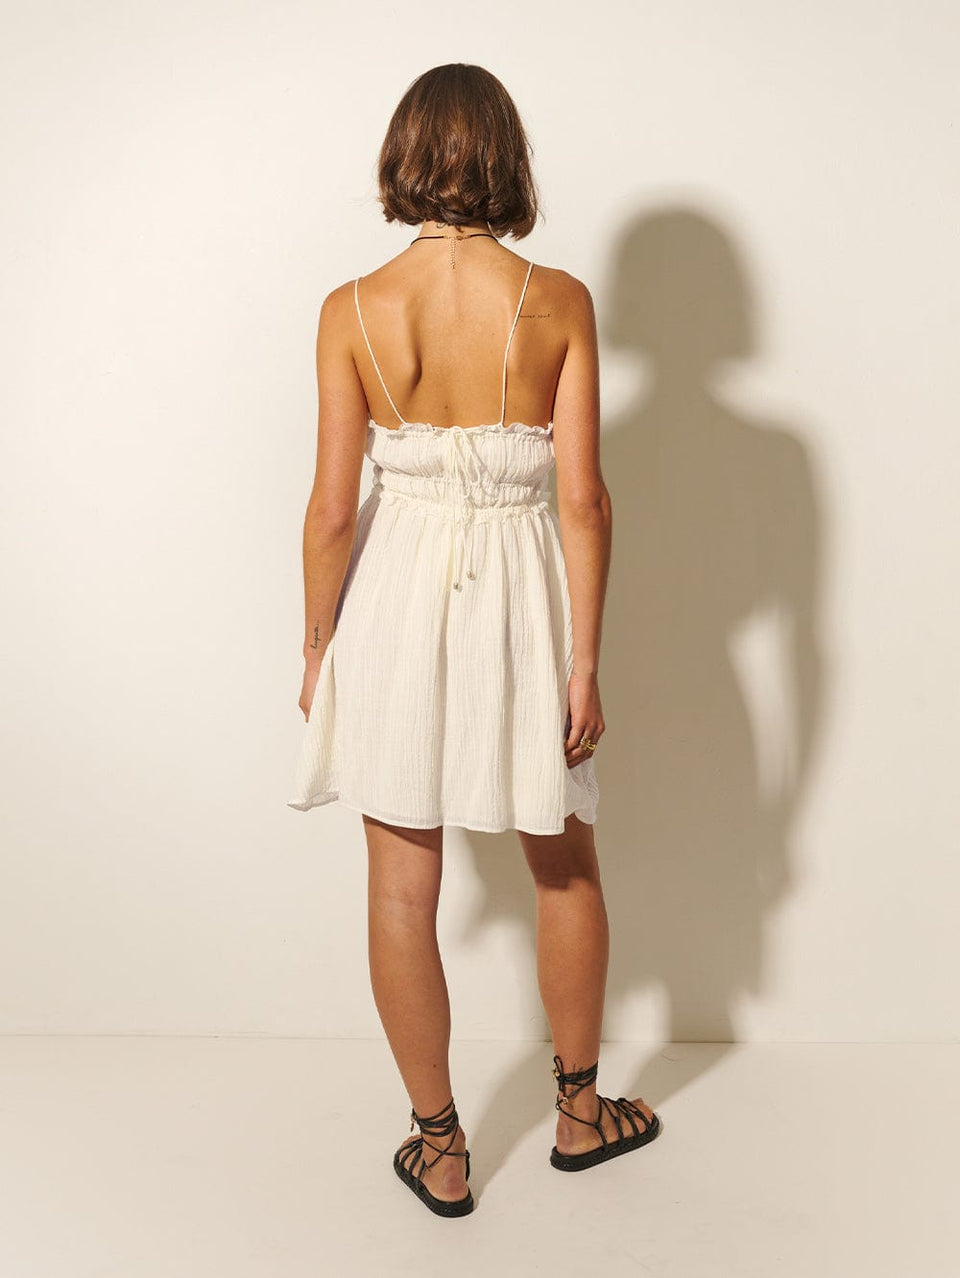 Nora Mini Dress KIVARI | Model wears ivory mini dress back view